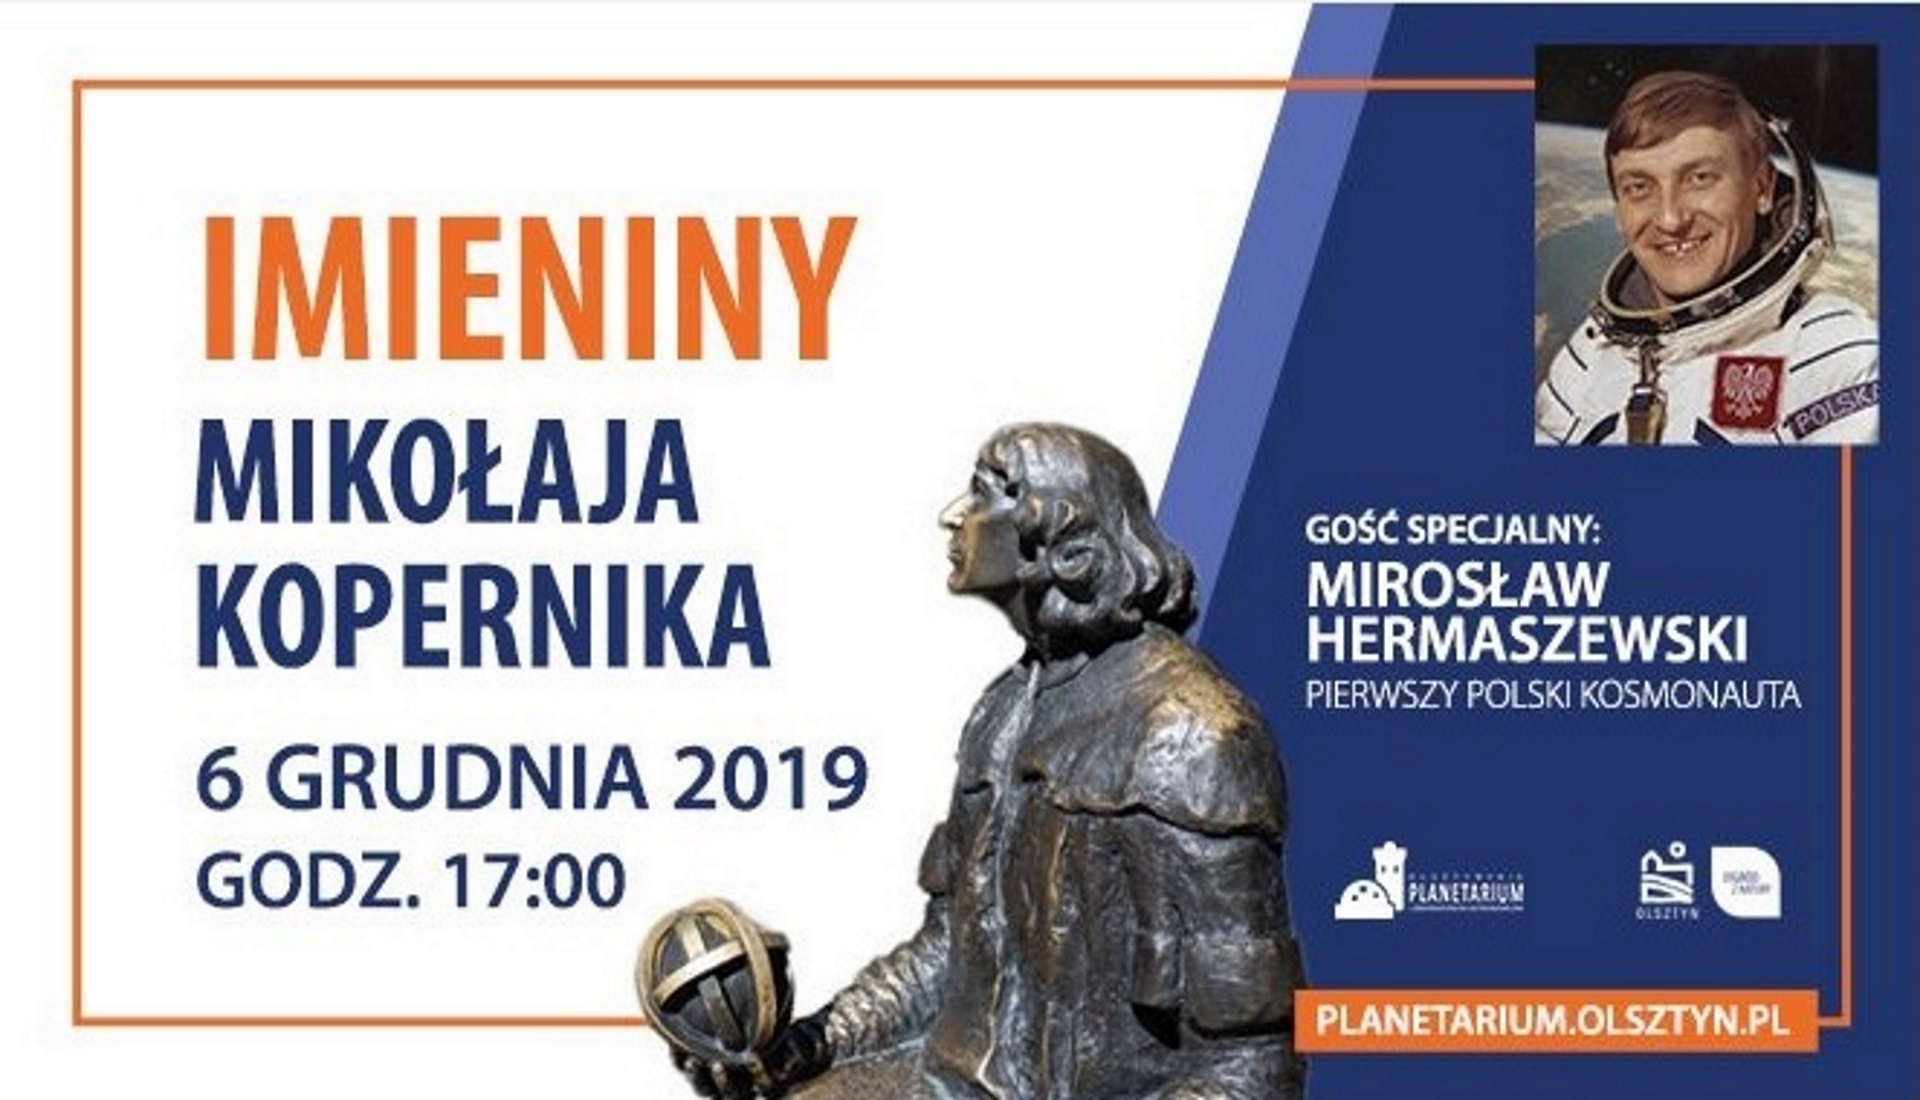 Plakat zapraszający na spotkanie do Planetarium w Olsztynie z Mirosławem Hermaszewskim. Na plakacie zdjęcie kosmonauty. 